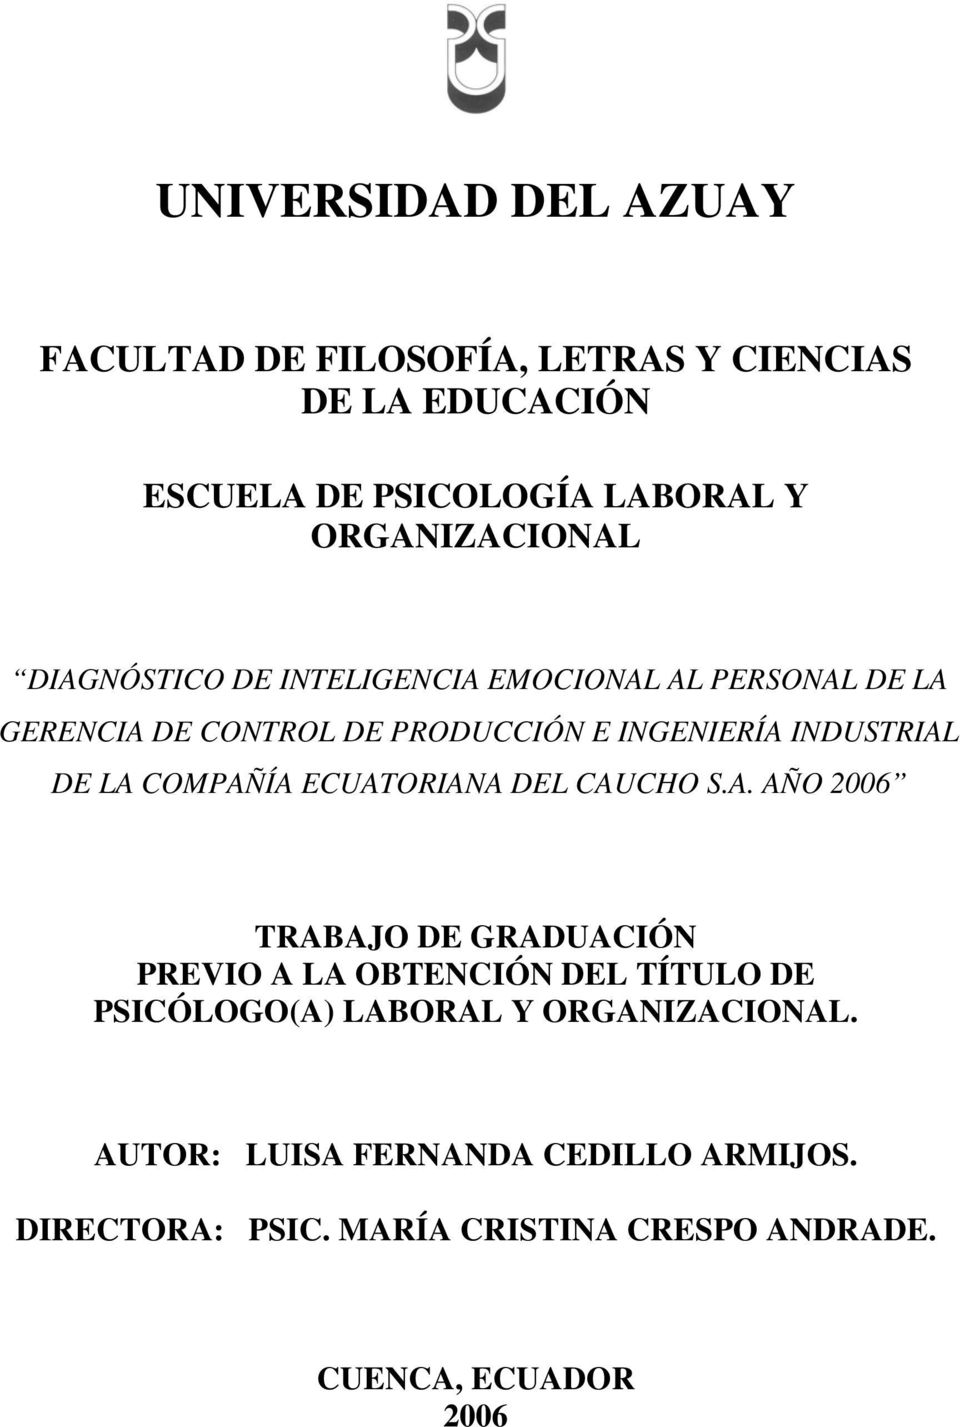 INDUSTRIAL DE LA COMPAÑÍA ECUATORIANA DEL CAUCHO S.A. AÑO 2006 TRABAJO DE GRADUACIÓN PREVIO A LA OBTENCIÓN DEL TÍTULO DE PSICÓLOGO(A) LABORAL Y ORGANIZACIONAL.